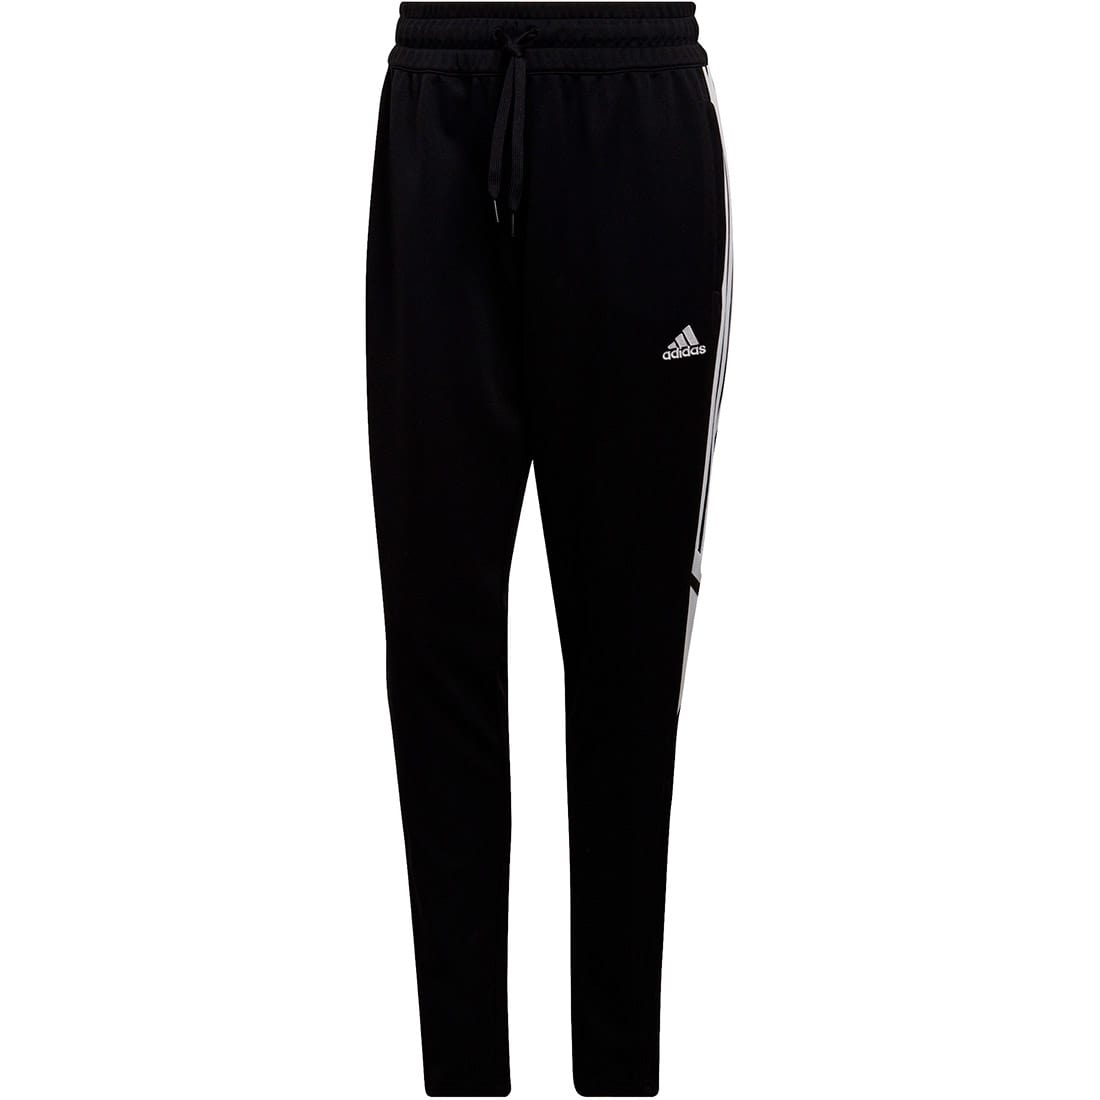 Adidas Damen Trainingshose Condivo 22 schwarz-weiß